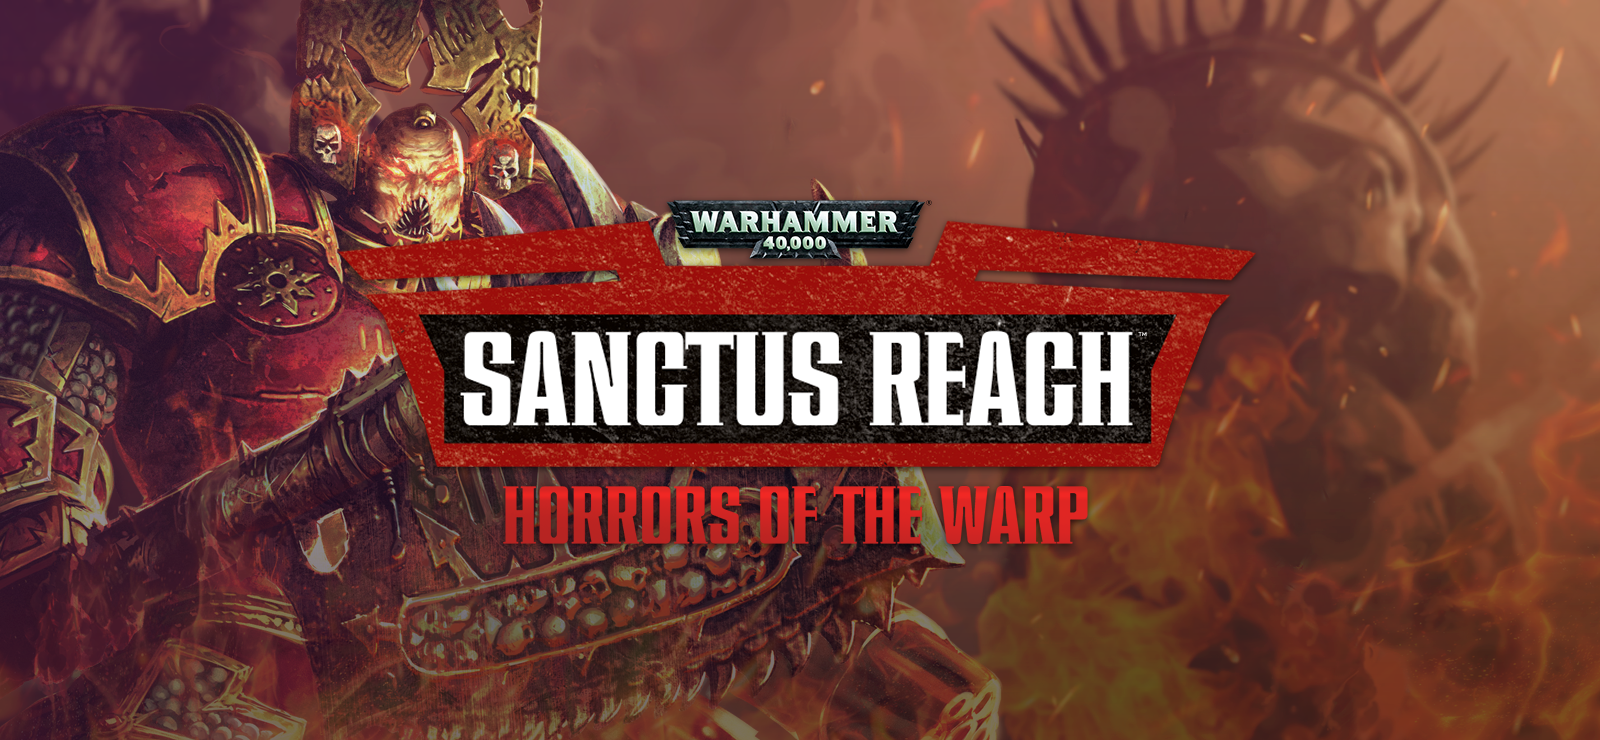 Warhammer 40,000: Sanctus Reach - Horrors Of The Warp